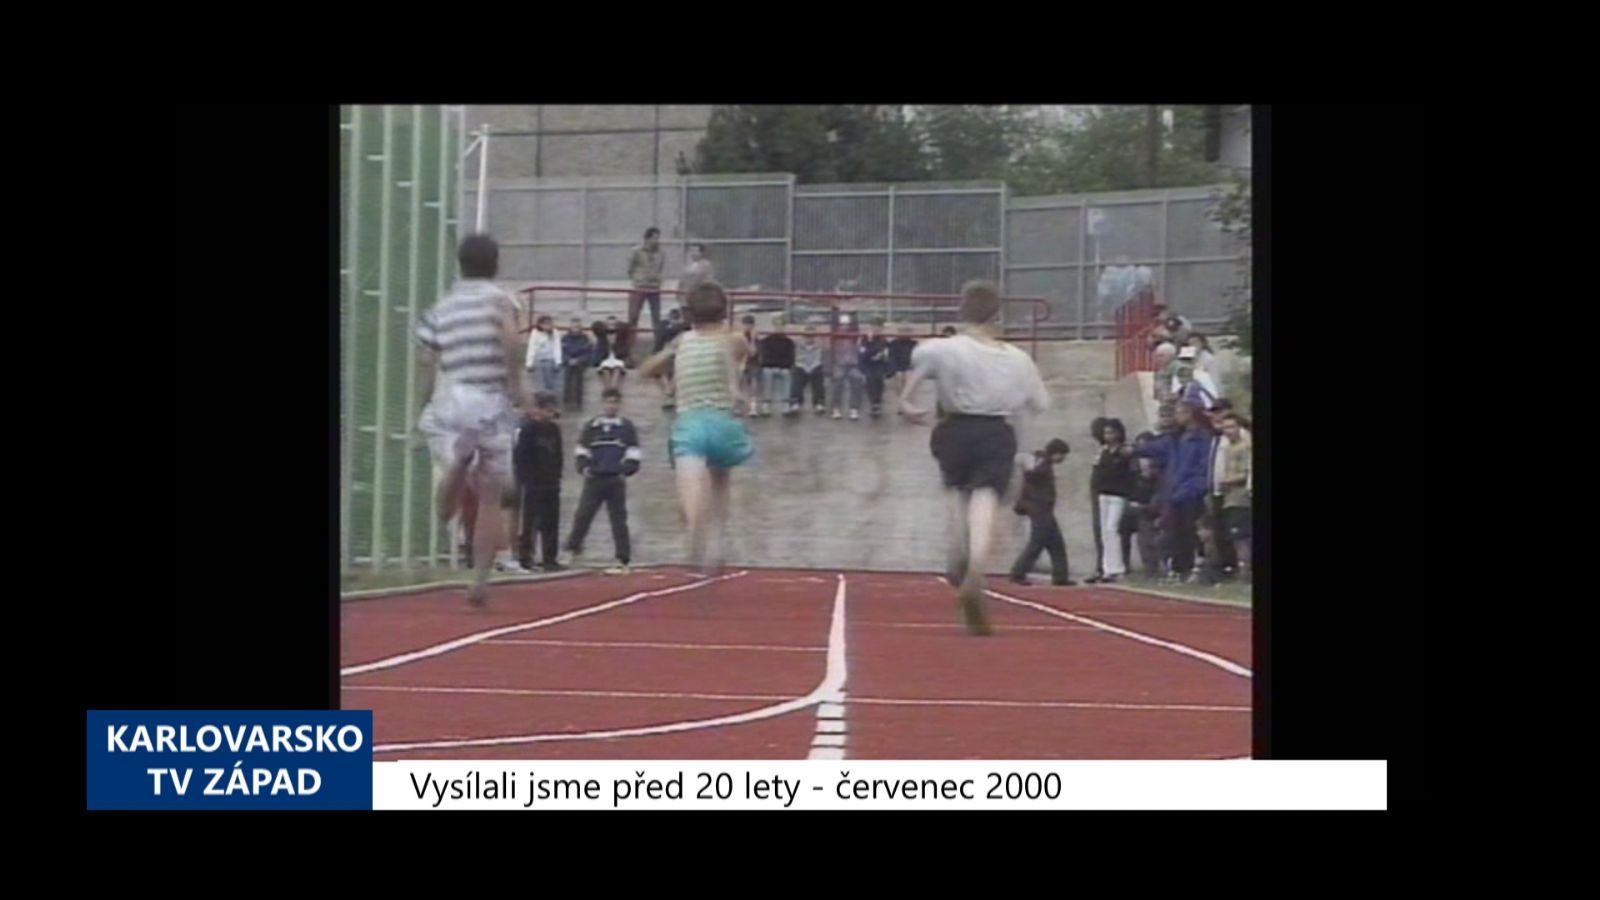 2000 – Cheb: Víceúčelové sportoviště u 1. ZŠ bylo dokončeno (TV Západ) 